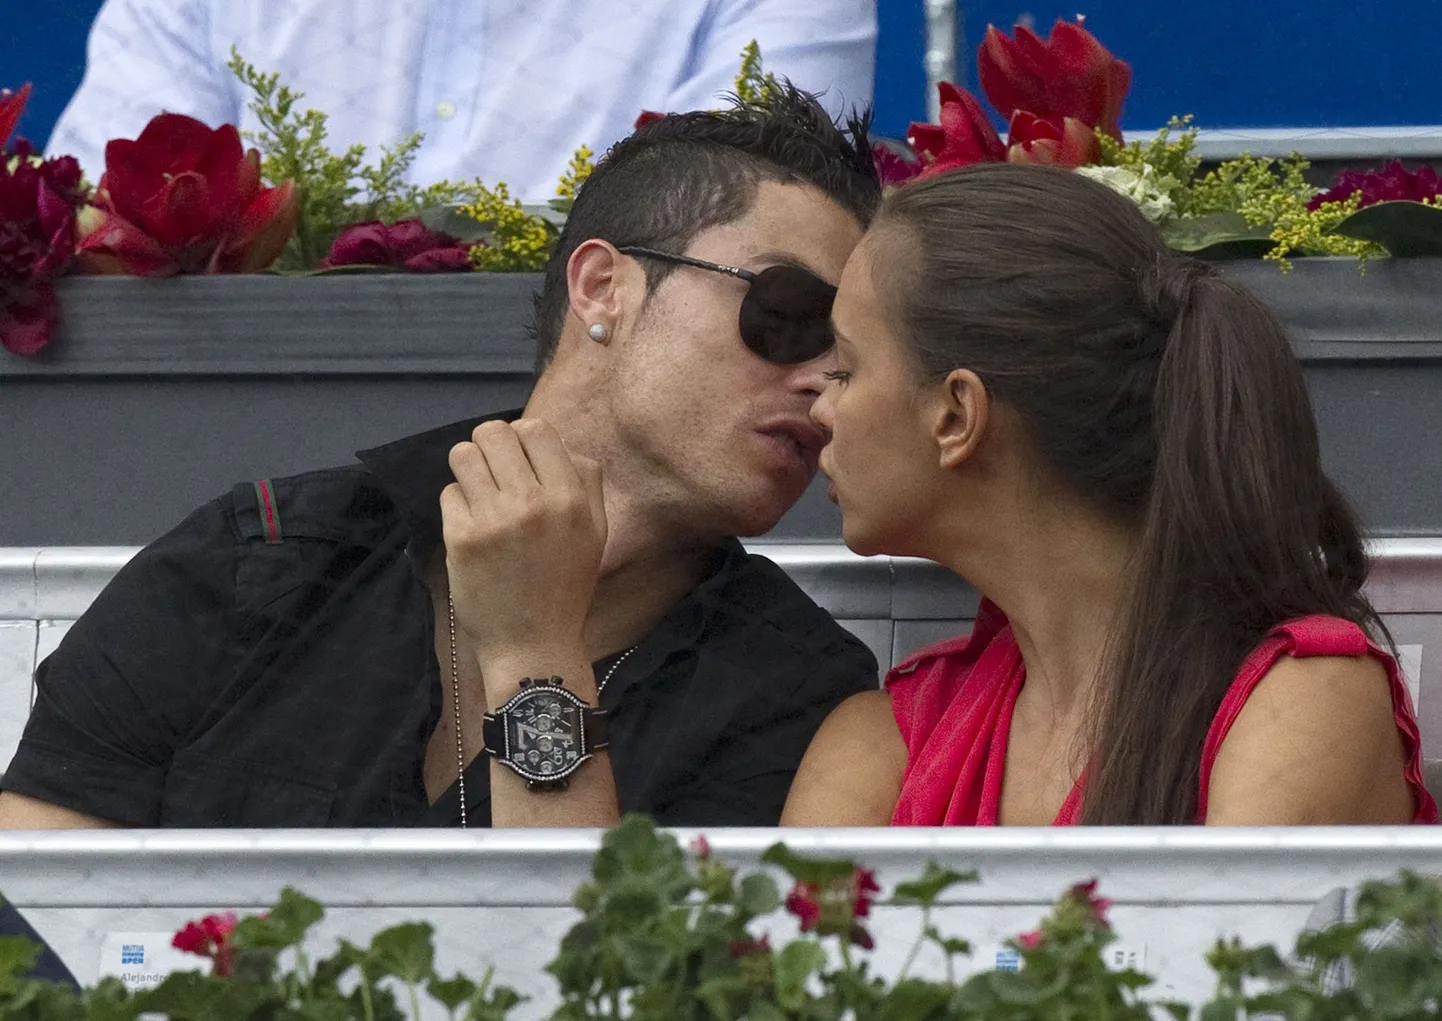 Madridi Reali jalgpallistaar Cristiano Ronaldo vaatas koos modellist tüdruksõbra Irina Shaykuga Madridi tenniseturniiri poolfinaali Roger Federeri ja Janko Tipsarevici vahel. Tagaplaanil Madridi Reali korvpallimeeskonna mängija Sergio Lull.